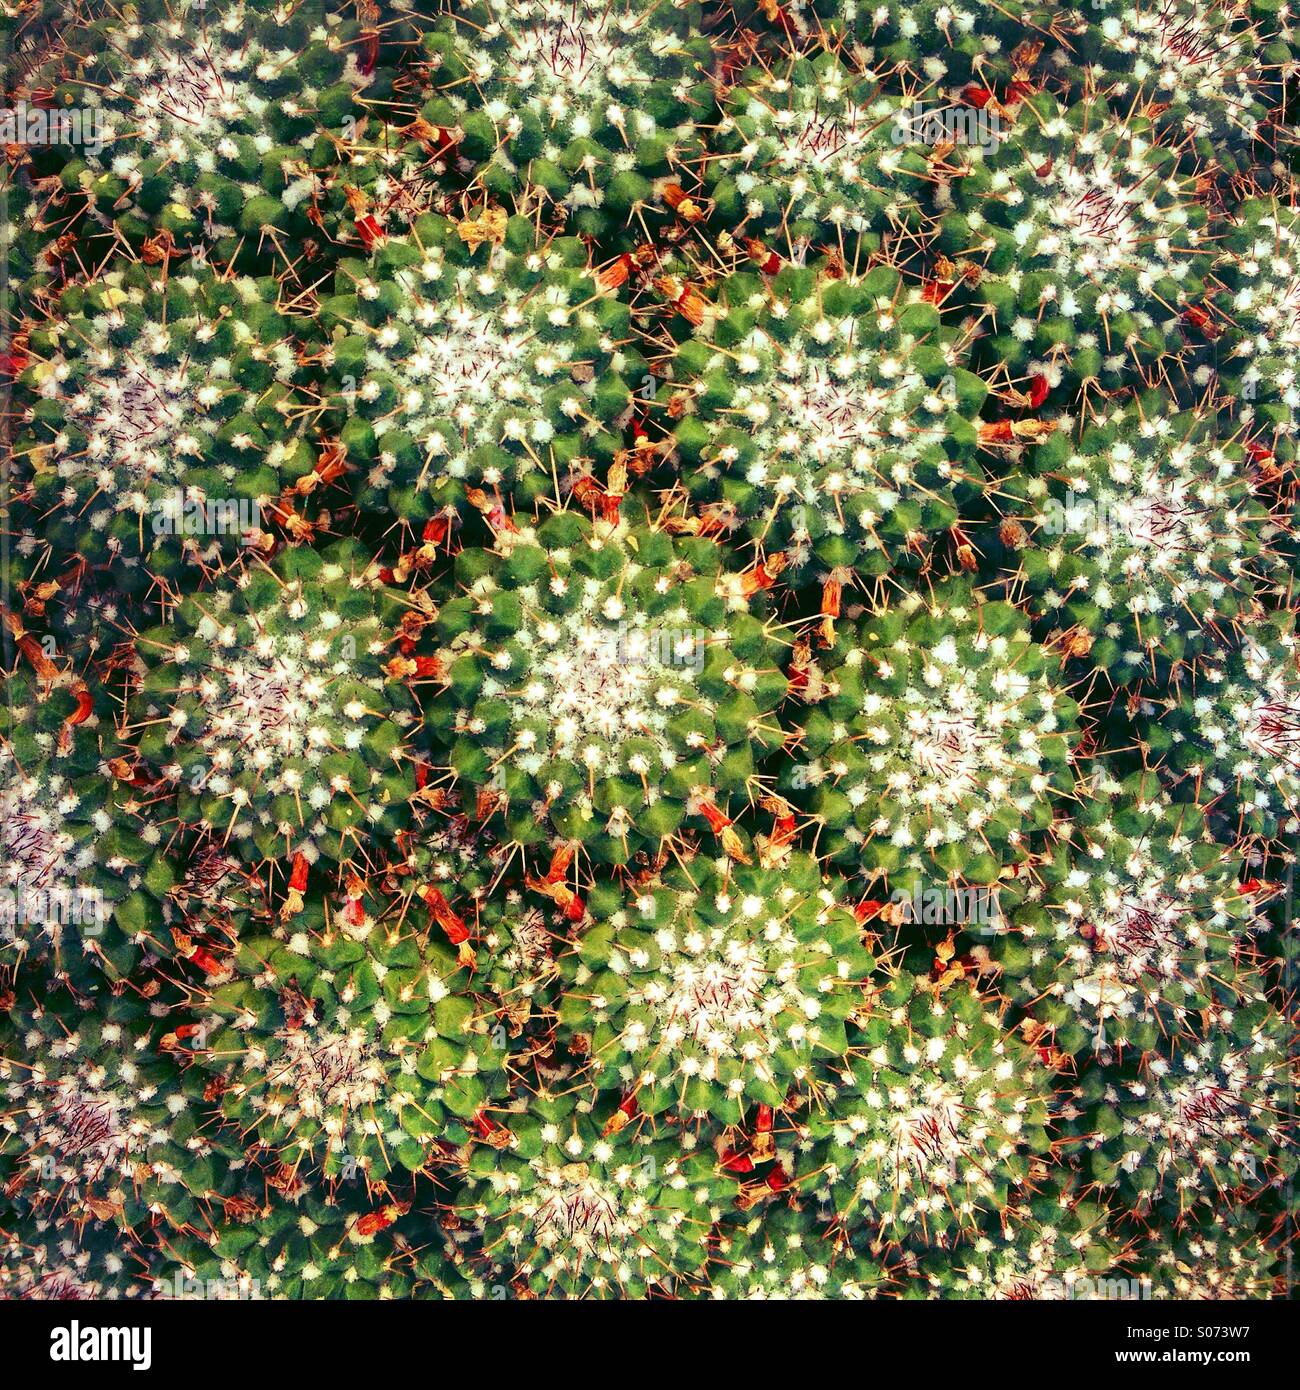 Los cactus con espinas afiladas creciendo juntos Foto de stock